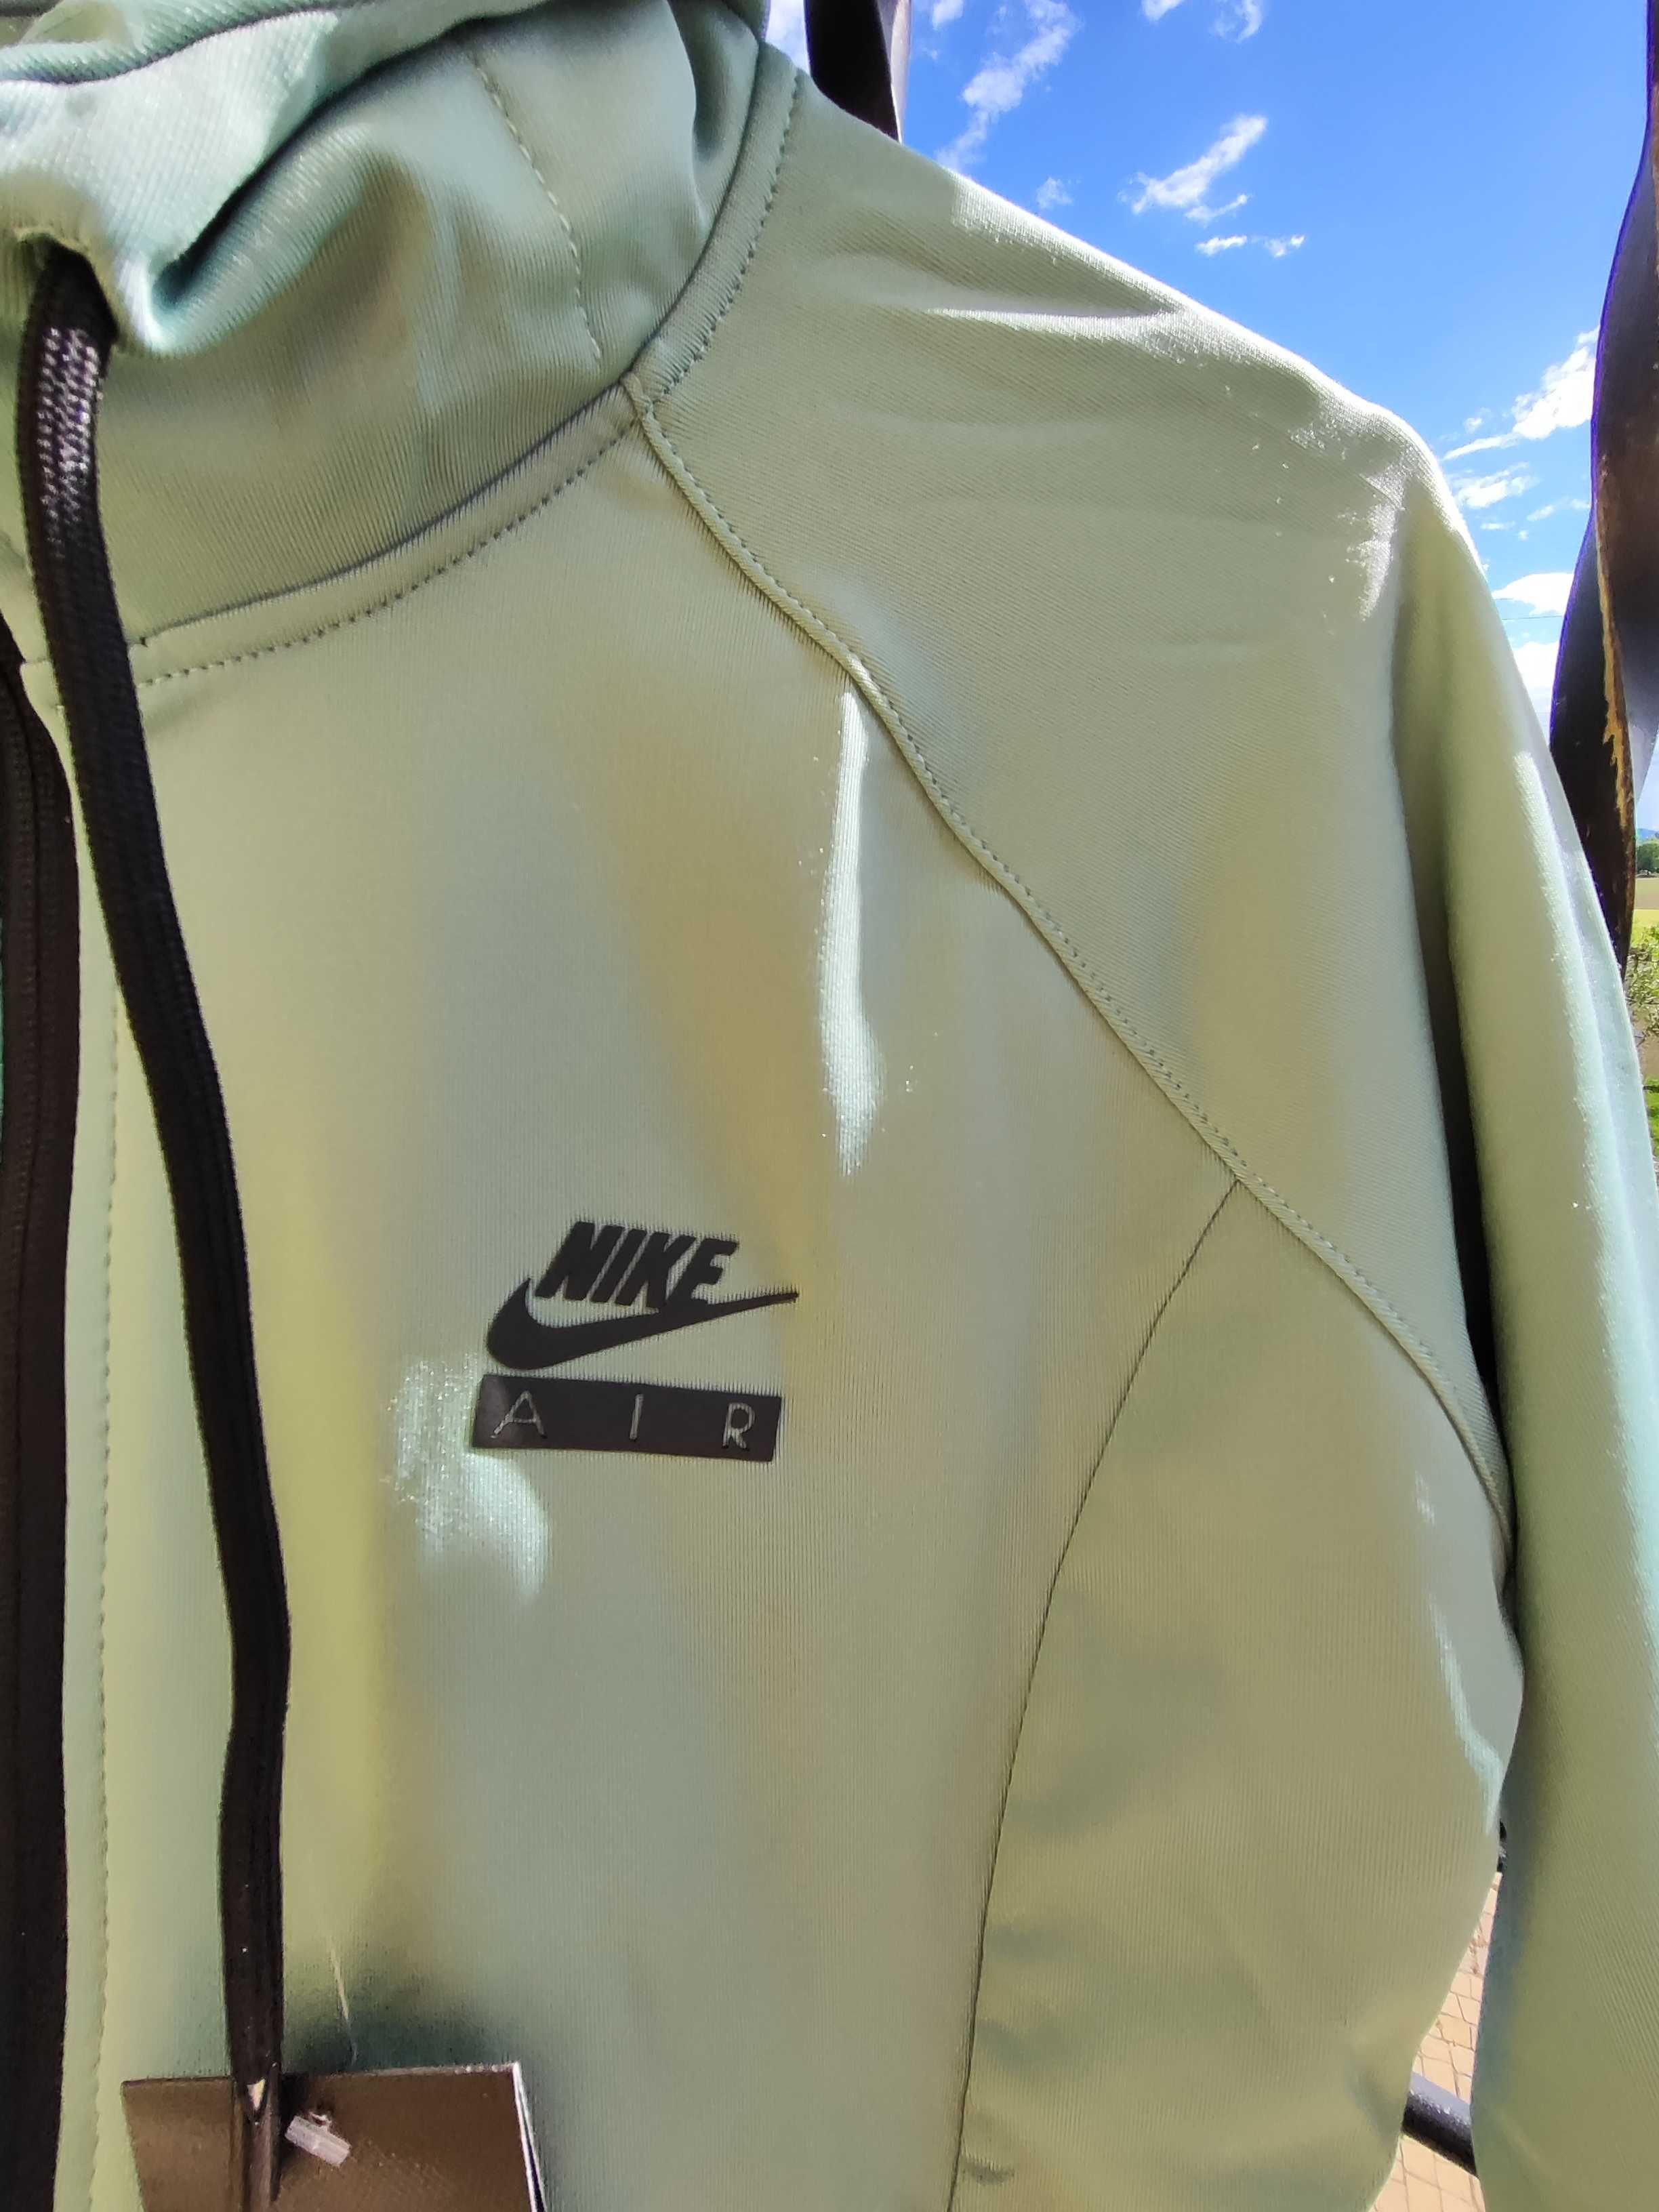 Nike Air damska bluza z kapturem-nowa